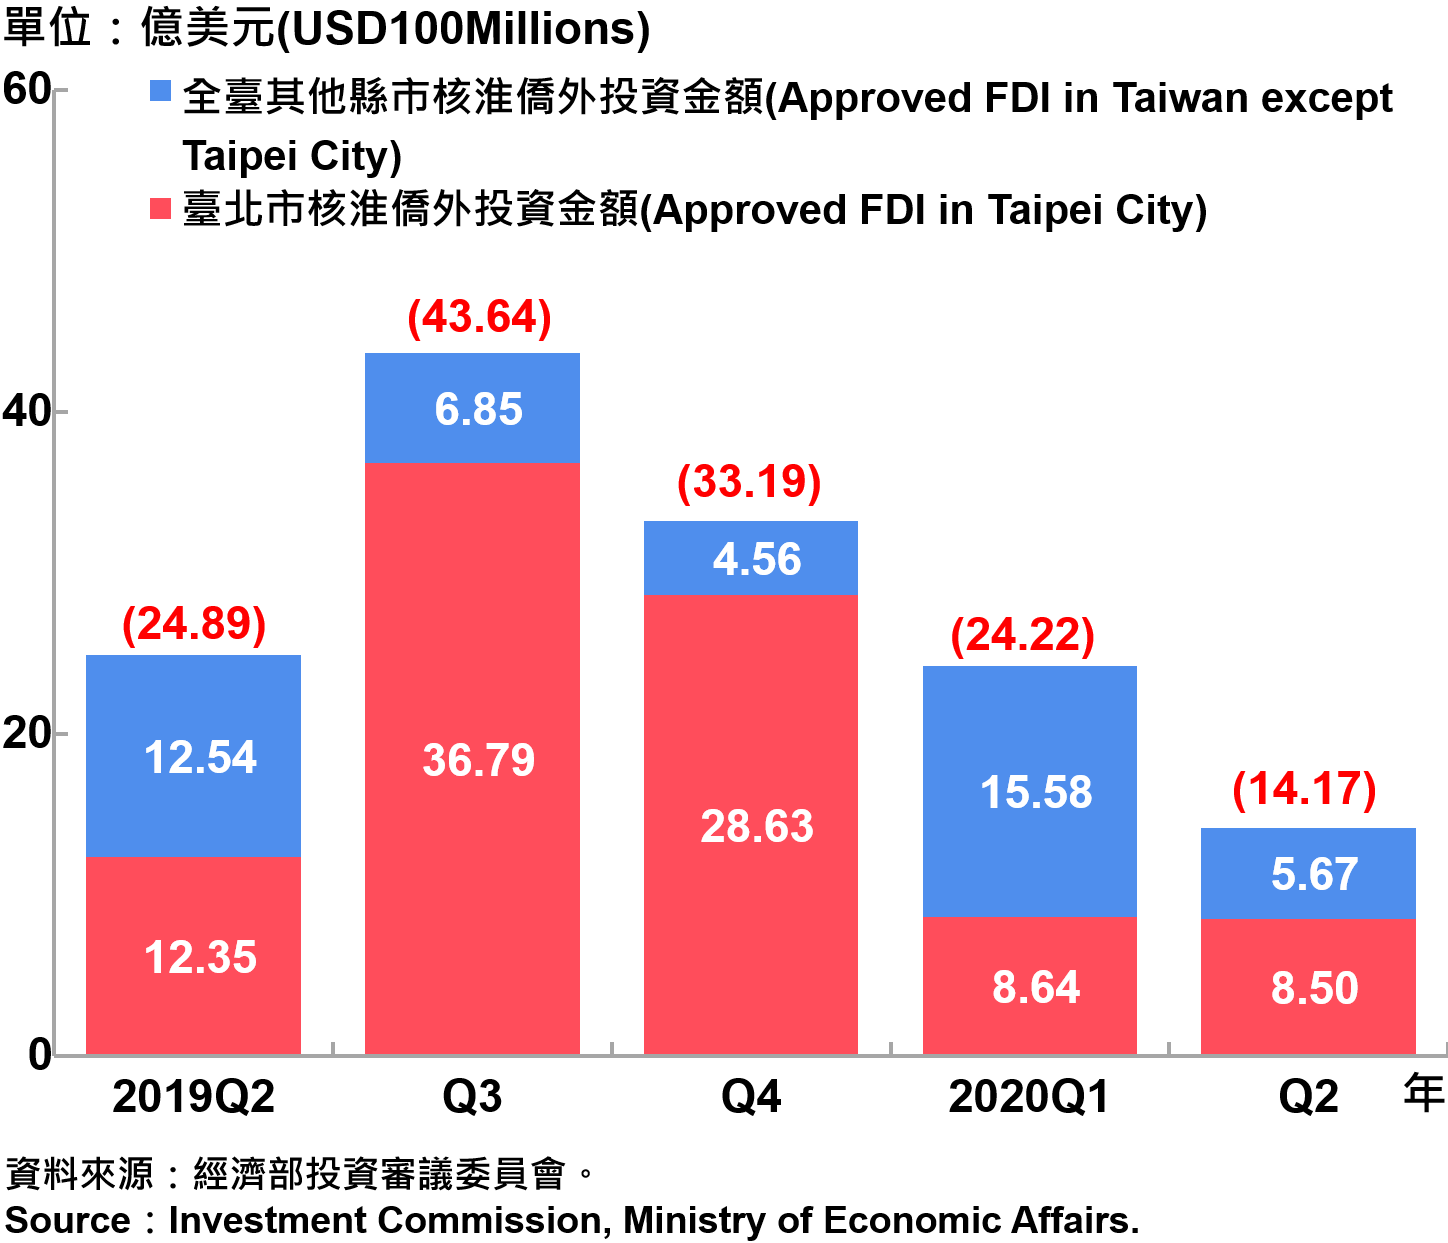 臺北市與全國僑外投資金額—2020Q2 Foreign Direct Investment（FDI）in Taipei City and Taiwan—2020Q2